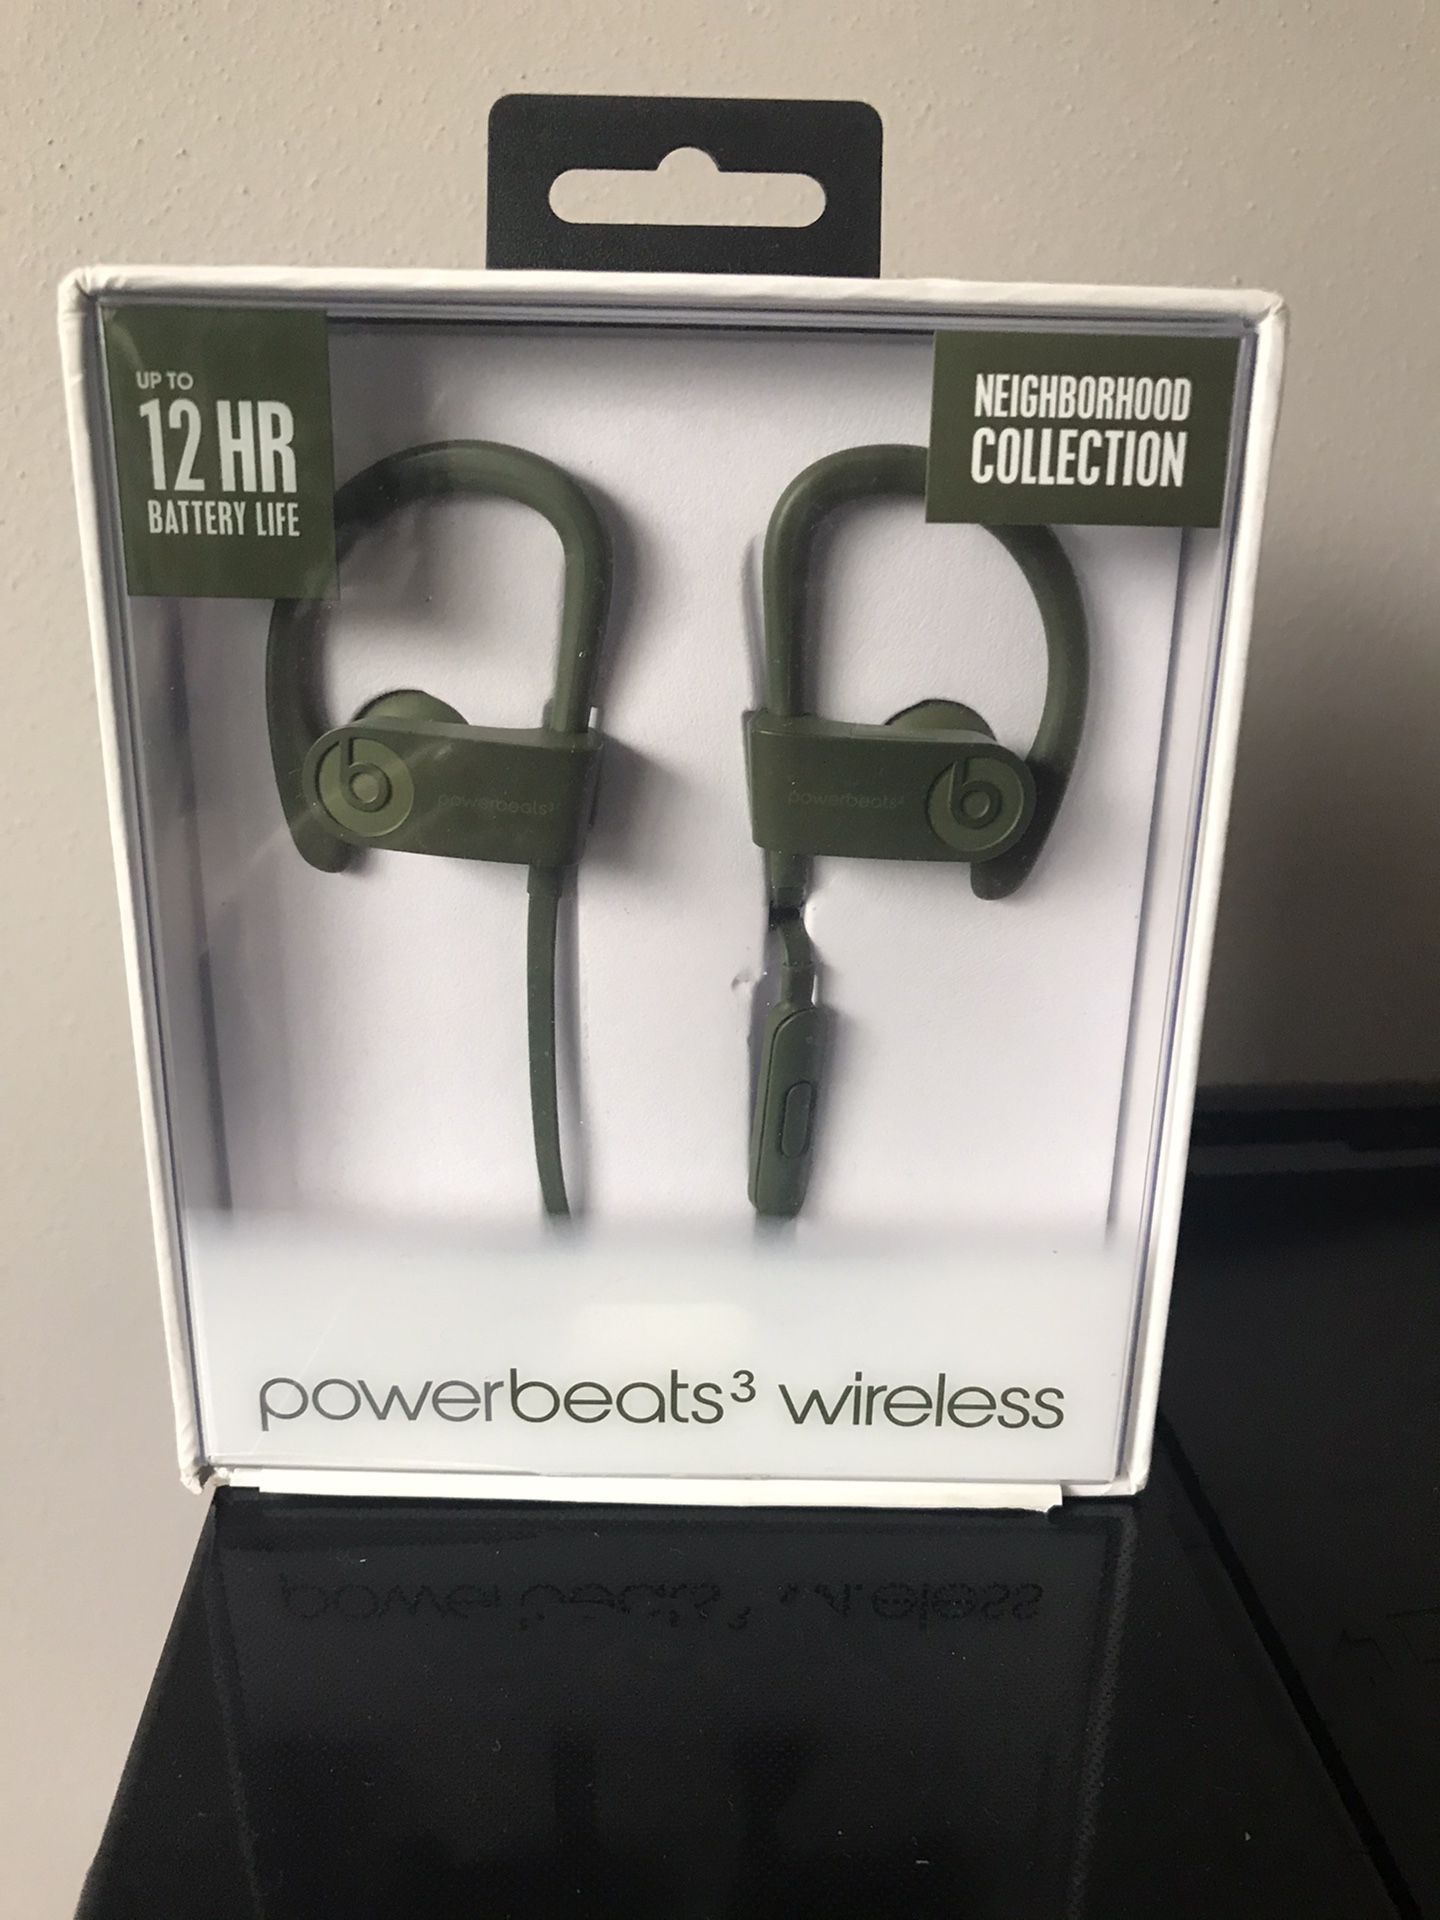 Powerbeats 3 Wireless Neighborhood Collection